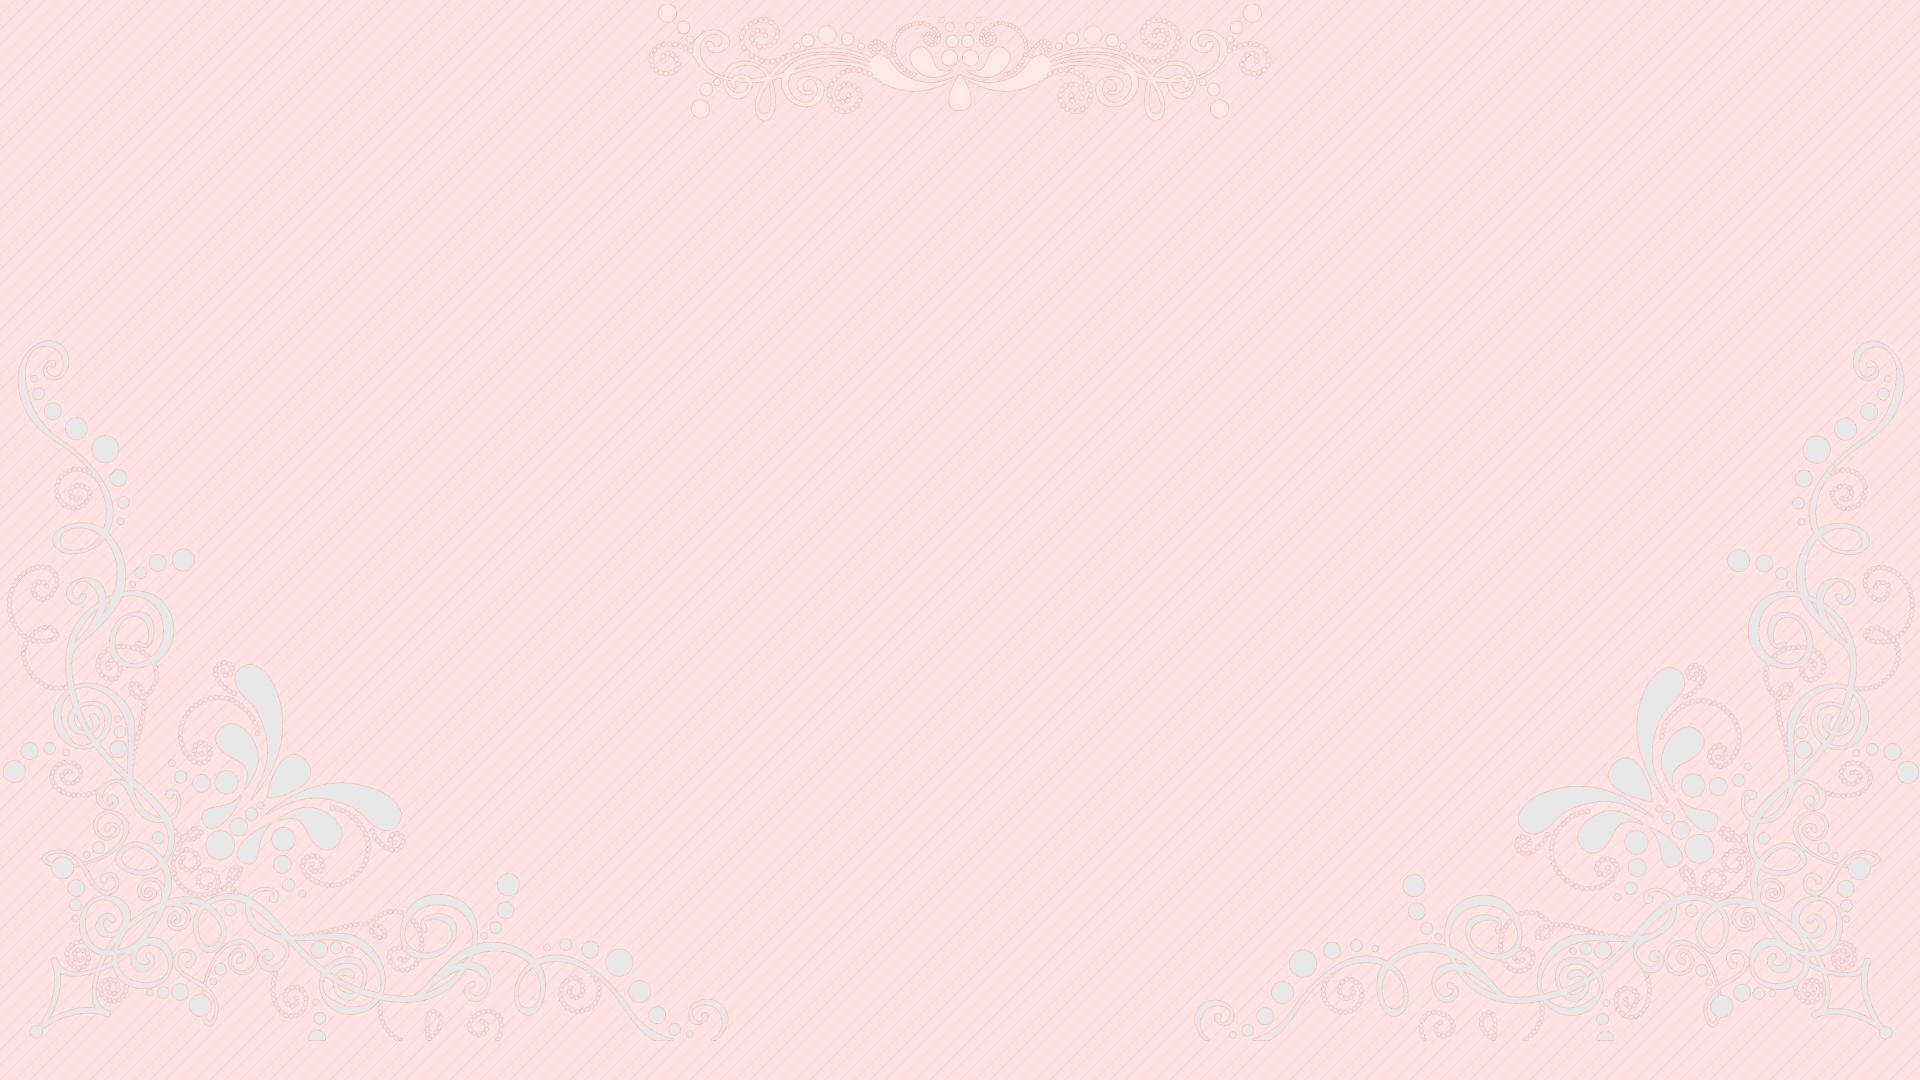 Free Pastel Pink Aesthetic Wallpaper Downloads, Pastel Pink Aesthetic Wallpaper for FREE